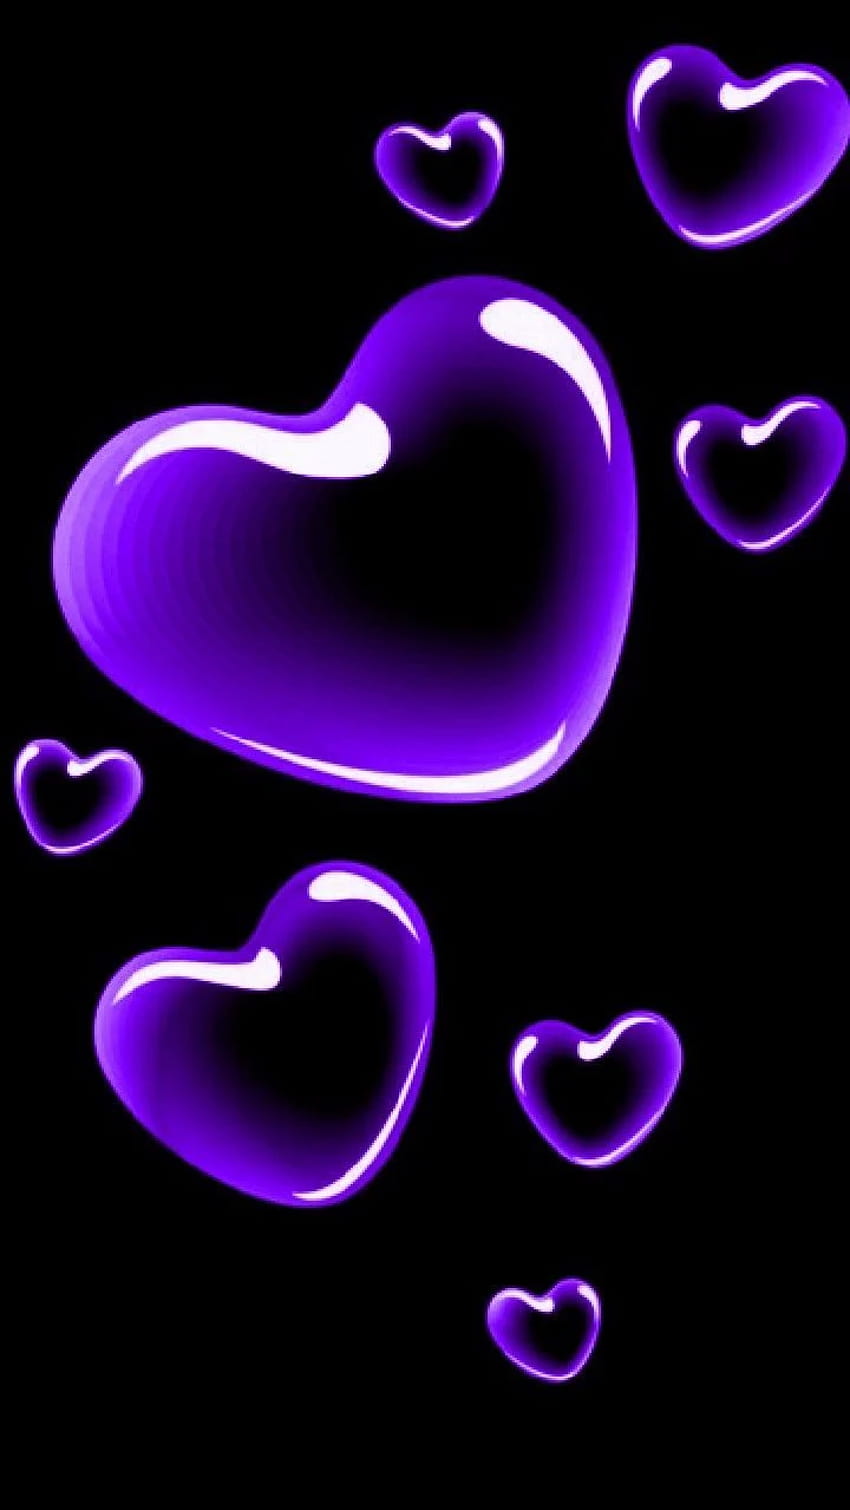 Purple heart aesthetic HD phone wallpaper | Pxfuel